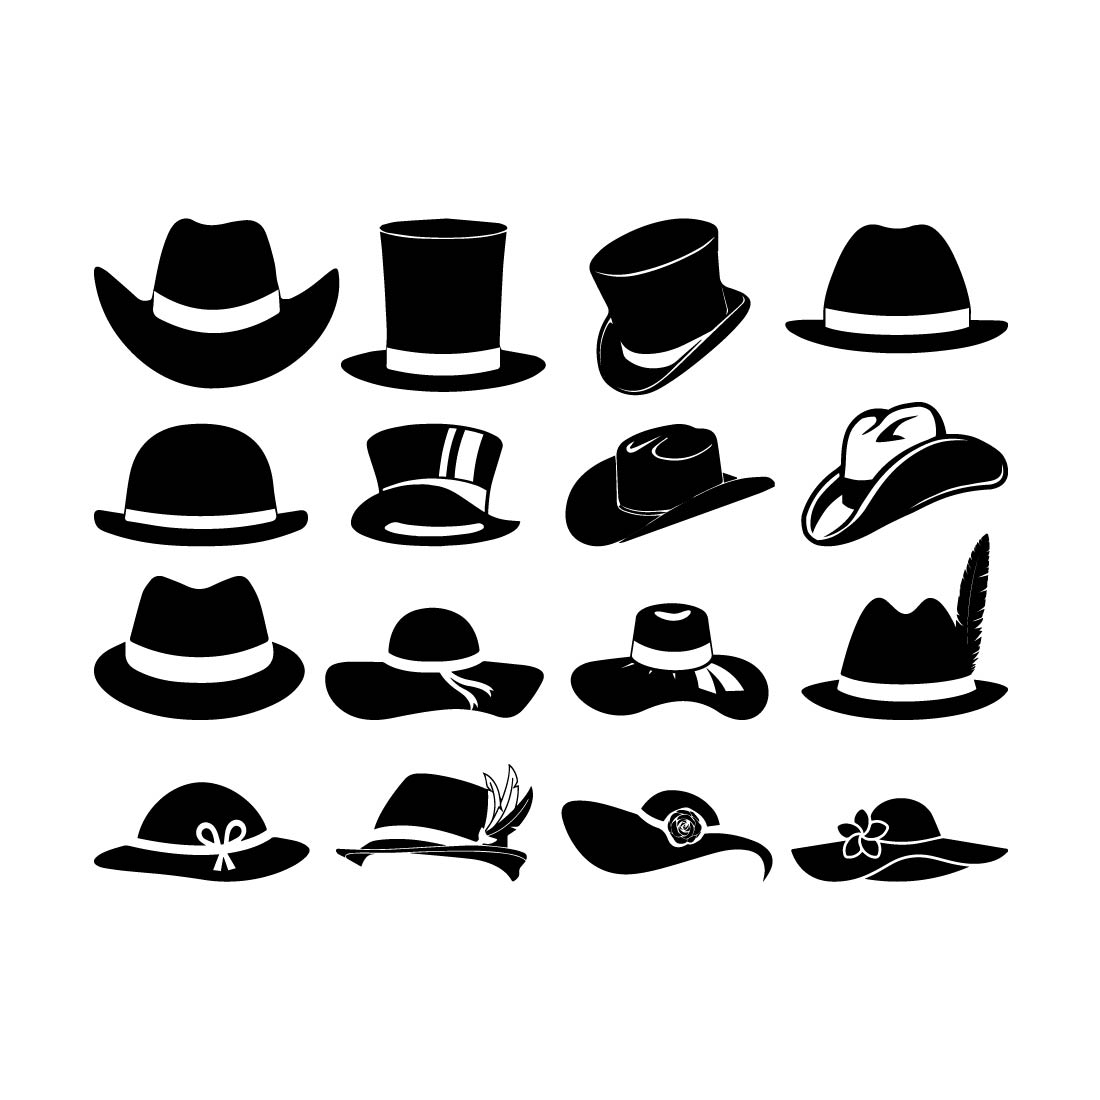 Cowboy Hat SVG, Cowboy Hat Vector, Cricut file, Clipart, Silhouette, Cuttable Design, Dxf, Png & Eps Designs preview image.